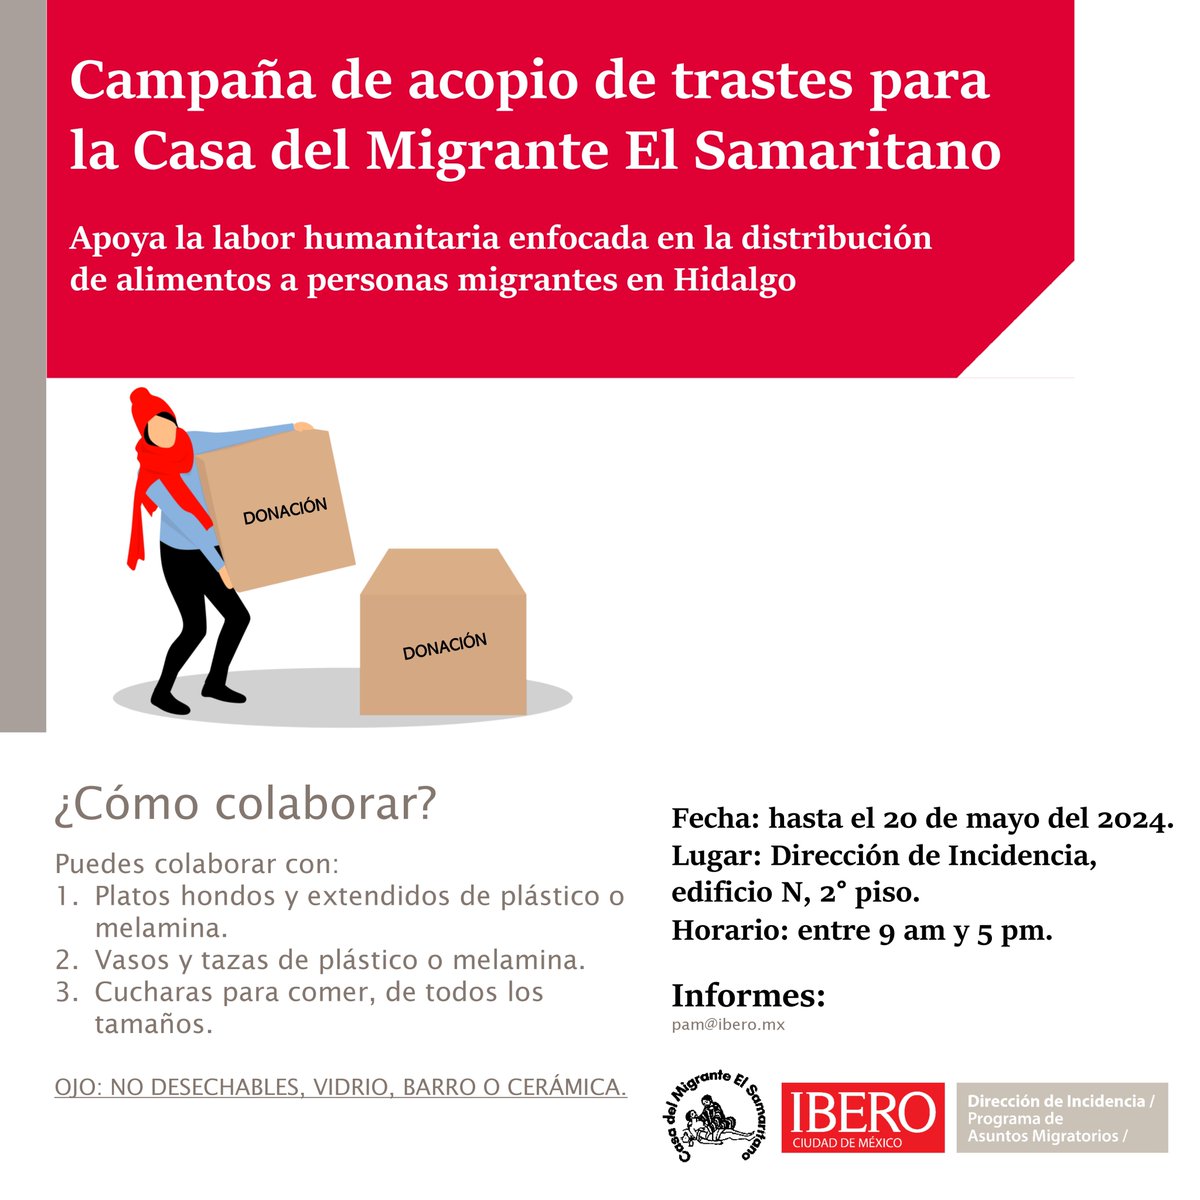 📢COMUNIDAD @IBERO_mx: la Casa del Migrante El Samaritano necesita tu apoyo 🍽️Puedes colaborar con vasos, platos, tazas o cucharas, de plástico o melamina. No podemos recibir insumos de otro material. 🗓️Tienes hasta el 20 de mayo ⁉️ Dudas? Escríbenos a pam@ibero.mx